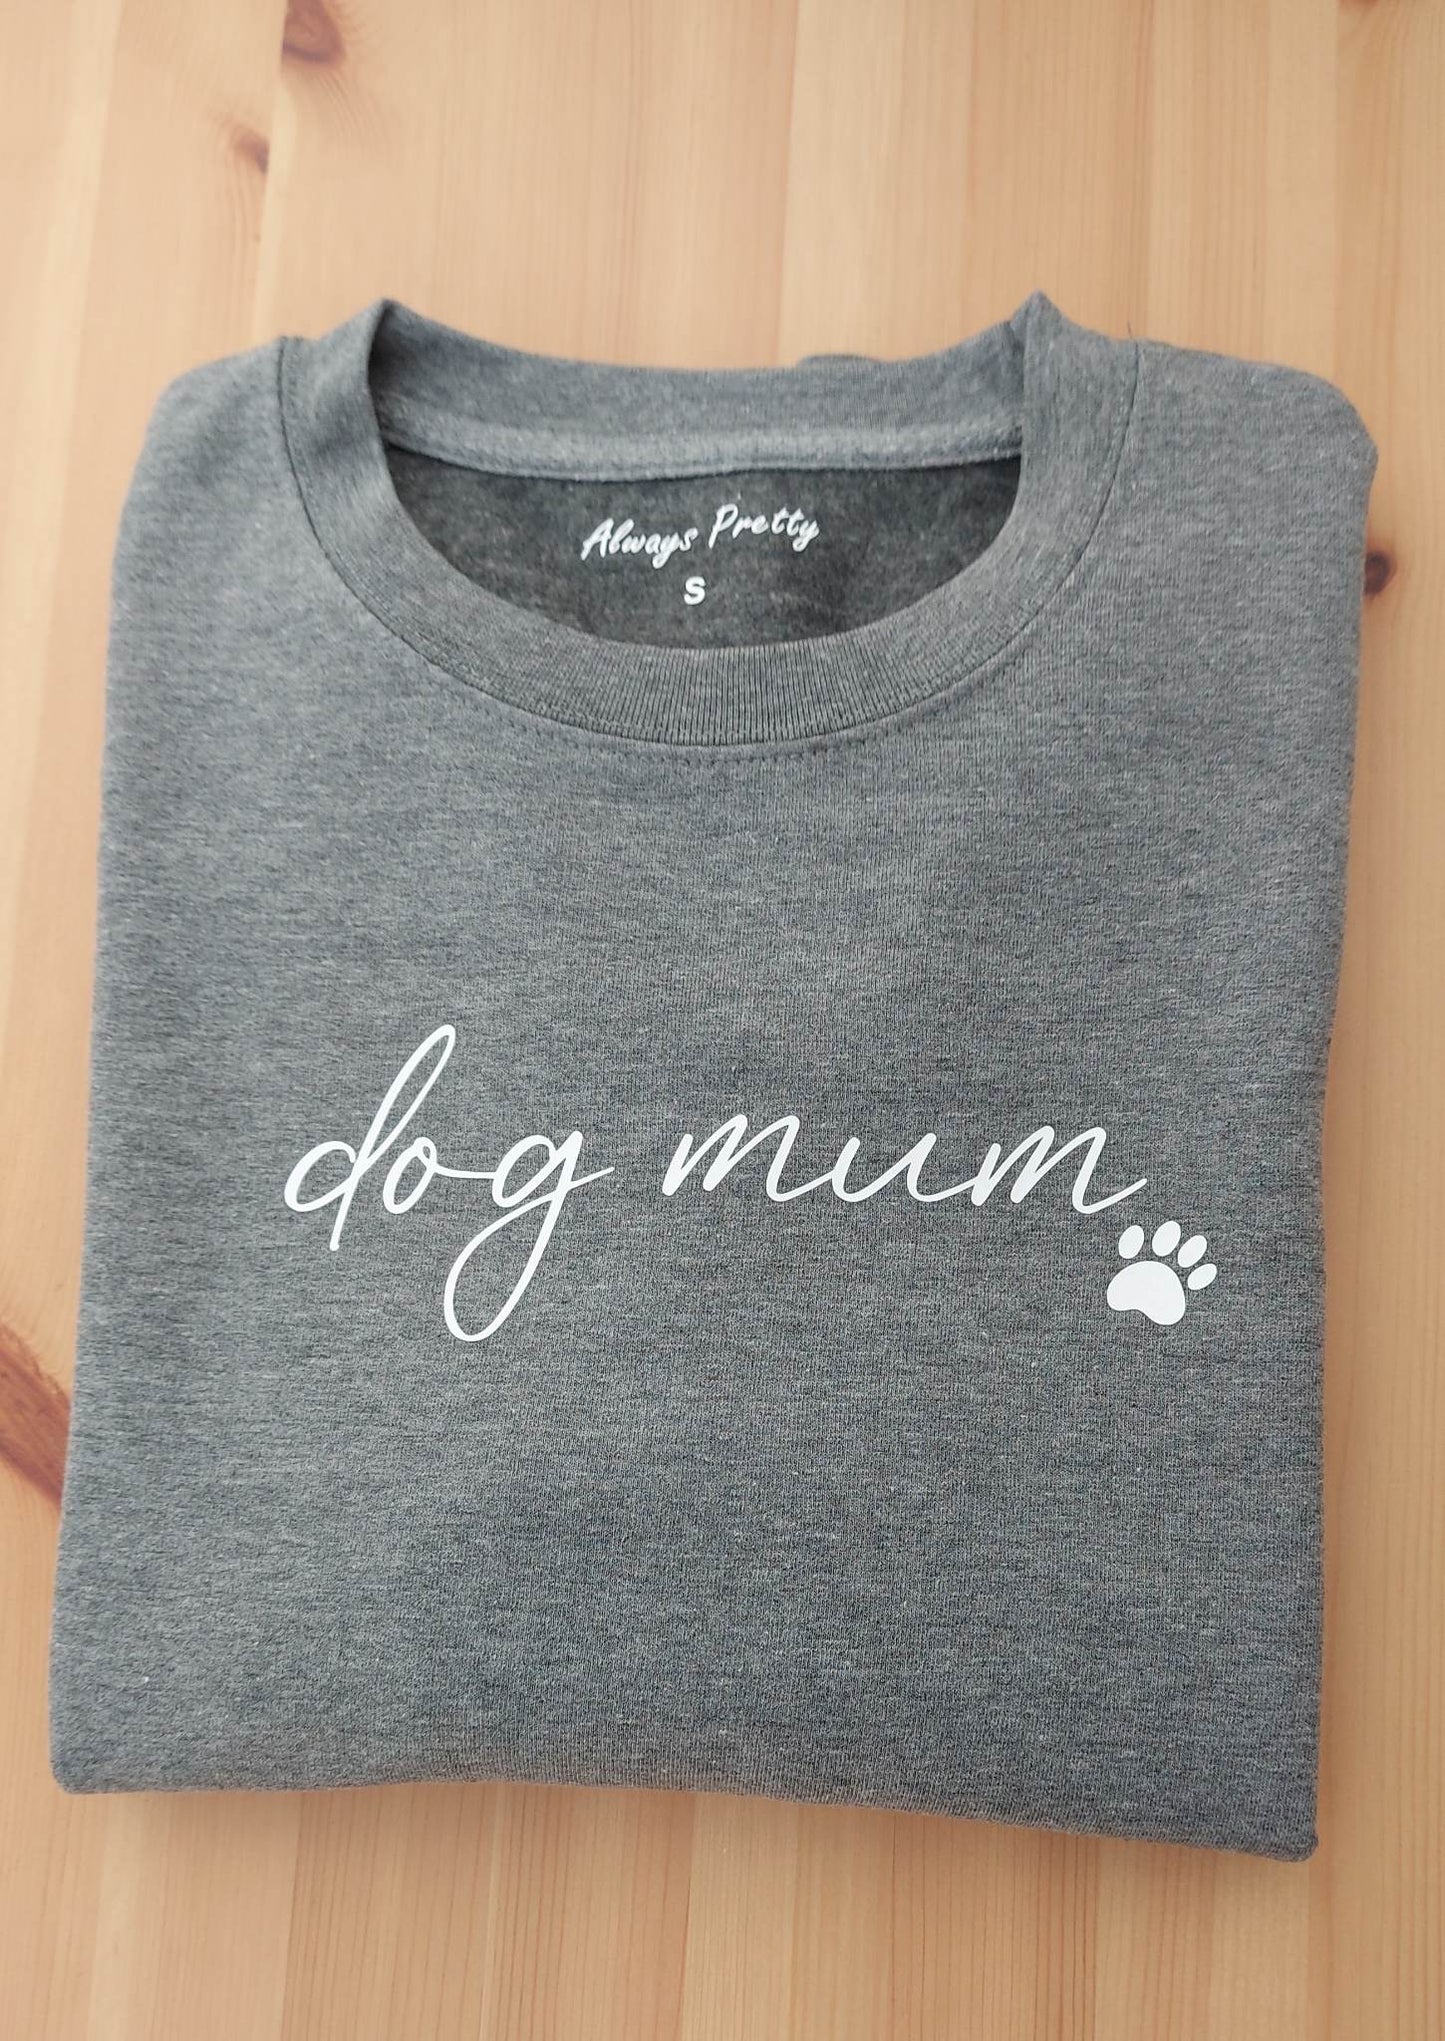 Dog Mum Sweater